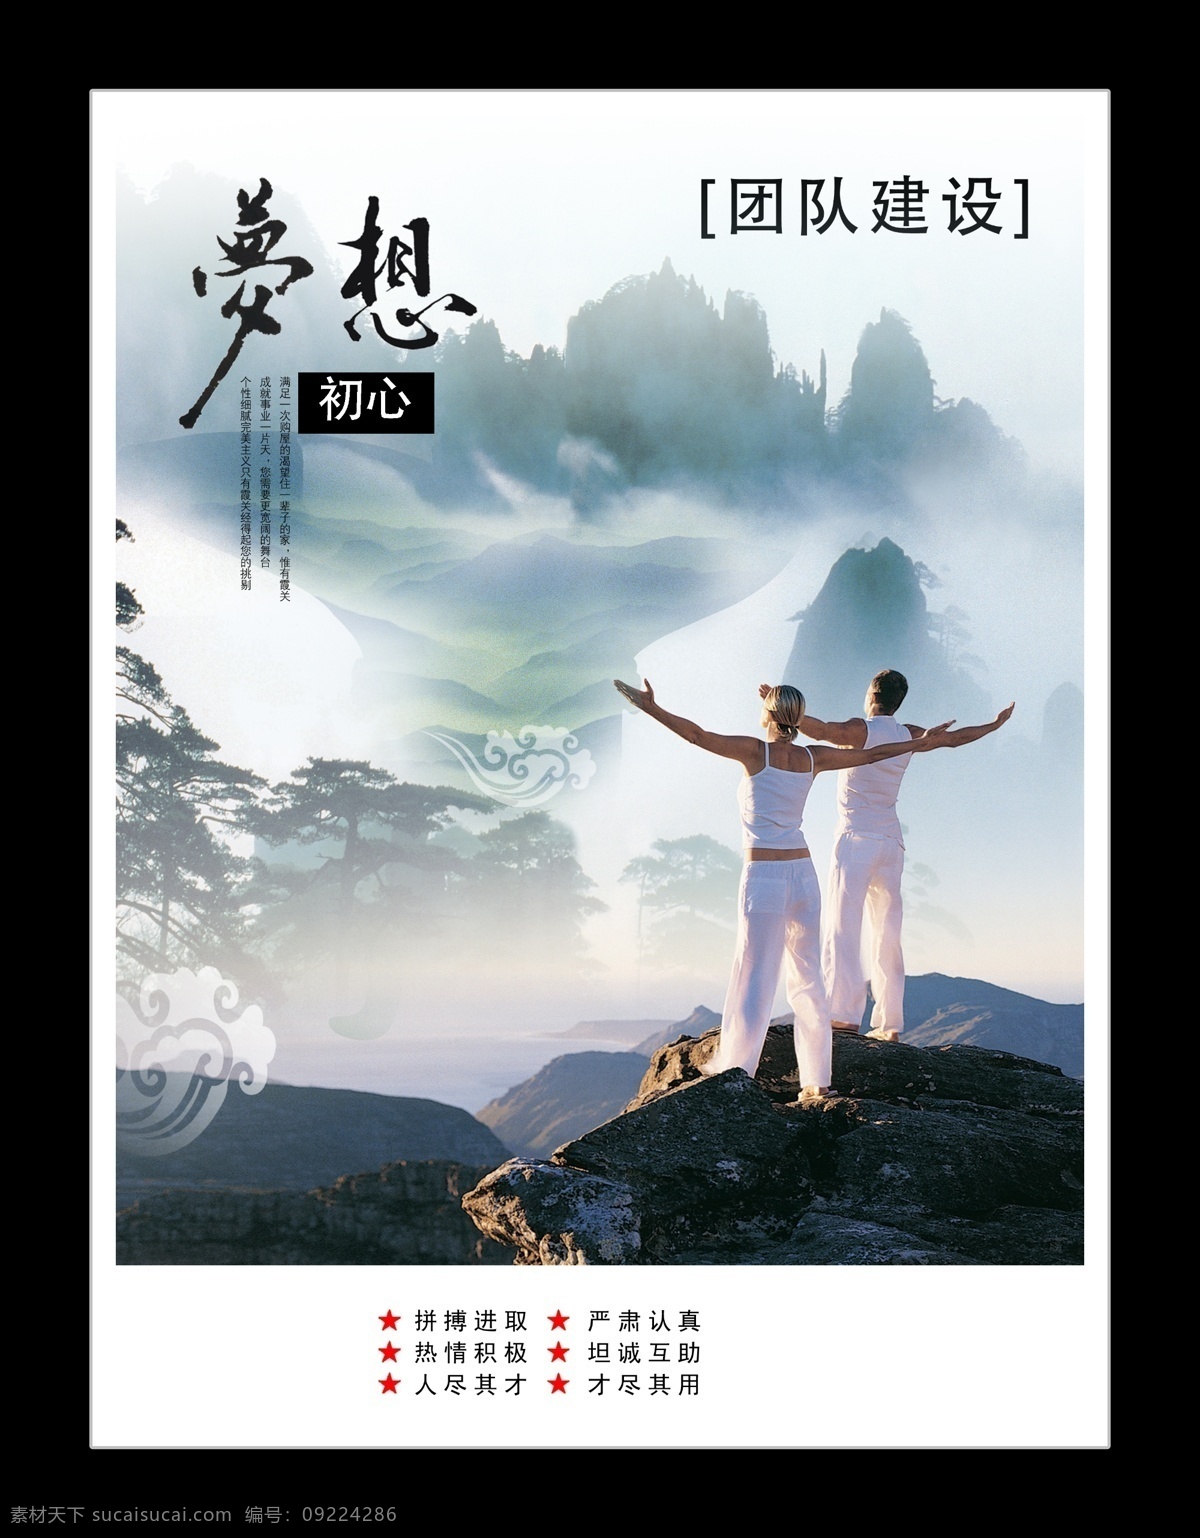 团队 建设 广告设计模板 励志 企业文化 水墨 团队建设 源文件 中国风 职员培训 企业文化海报